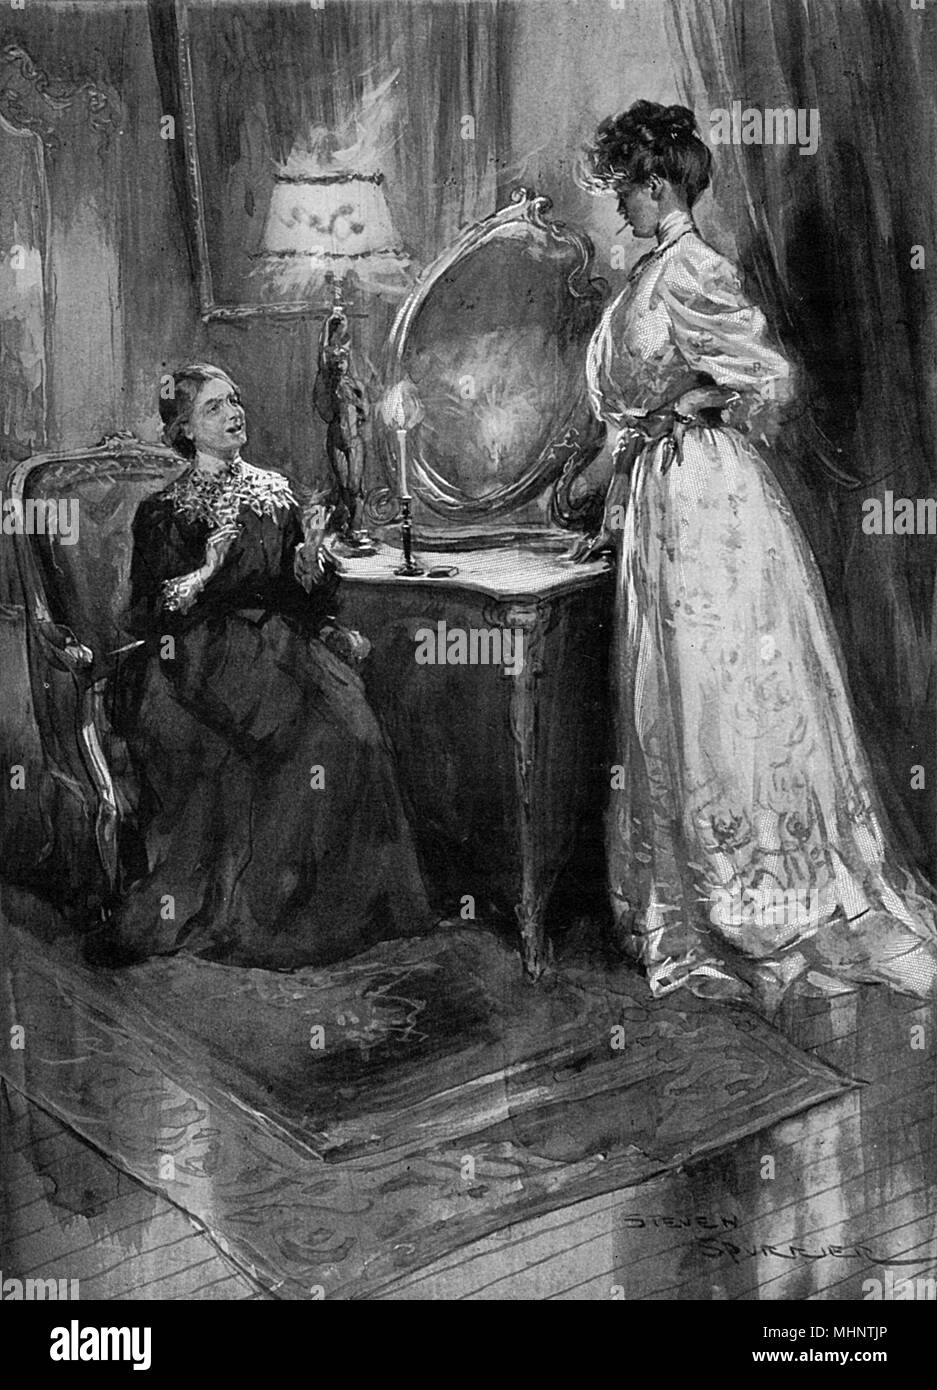 Illustration pour une nouvelle de E. F. Benson, 'La Puce' soie illustrant la une jeune femme fumant une cigarette en face de sa tante. Date : 1908 Banque D'Images